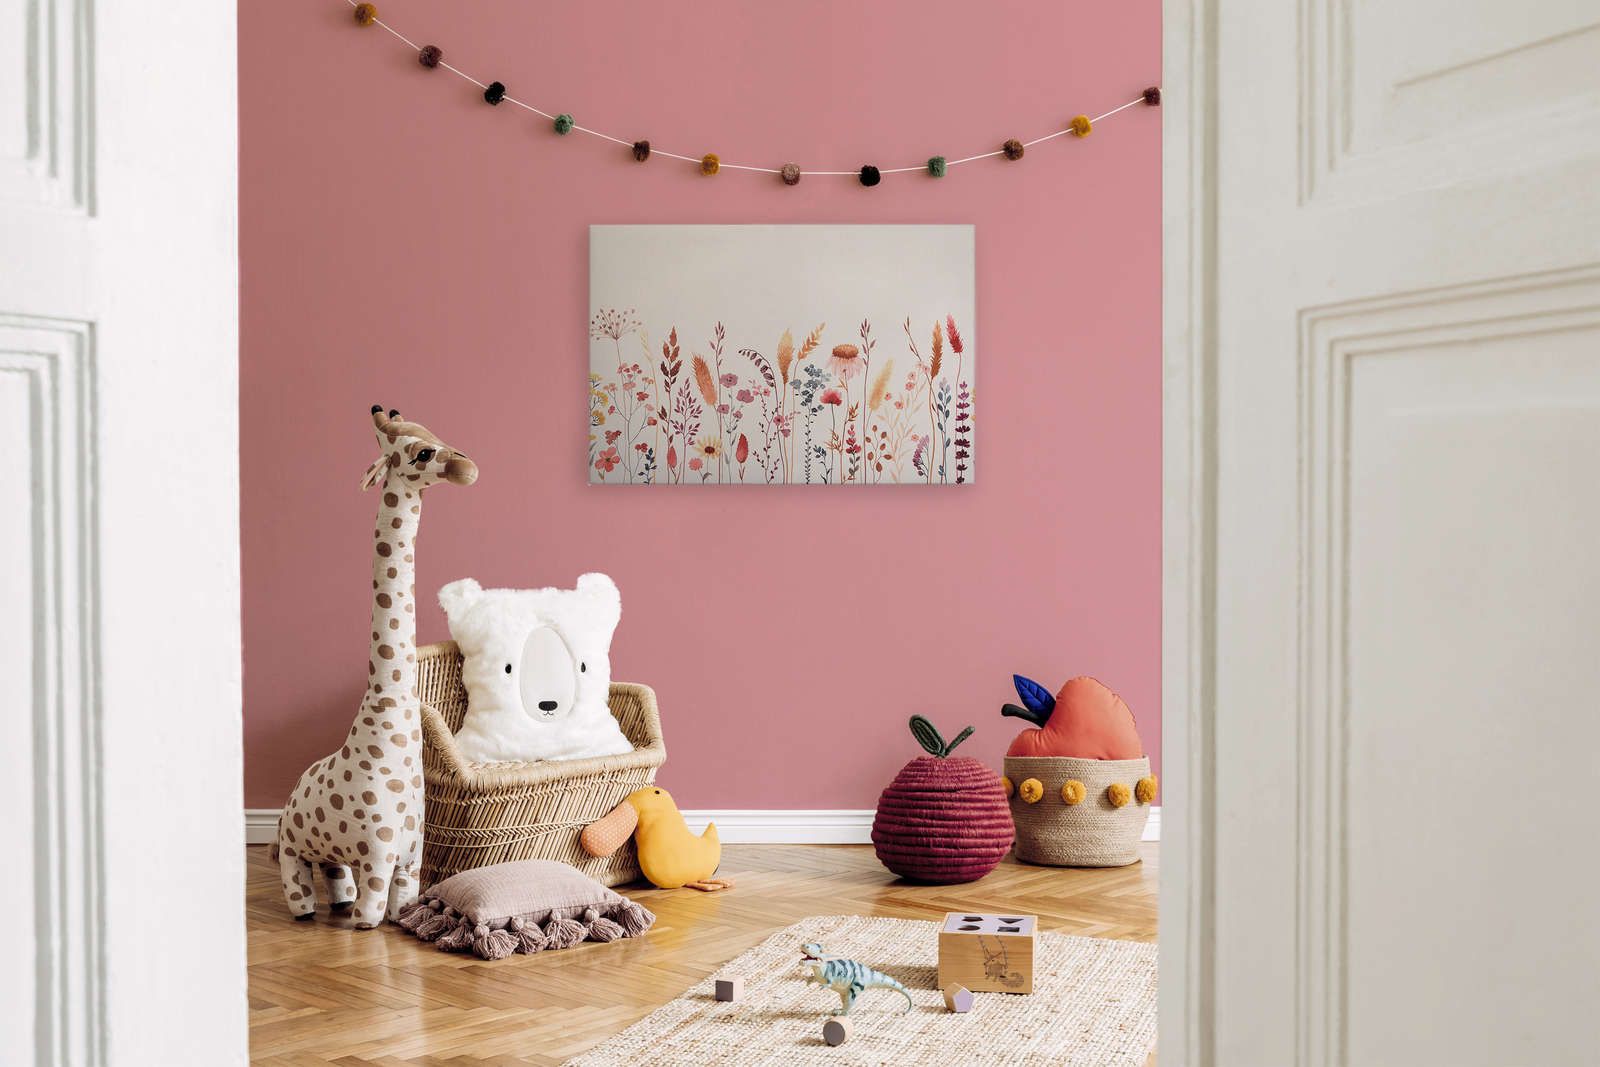             Leinwand fürs Kinderzimmer mit Blättern und Gräsern – 90 cm x 60 cm
        